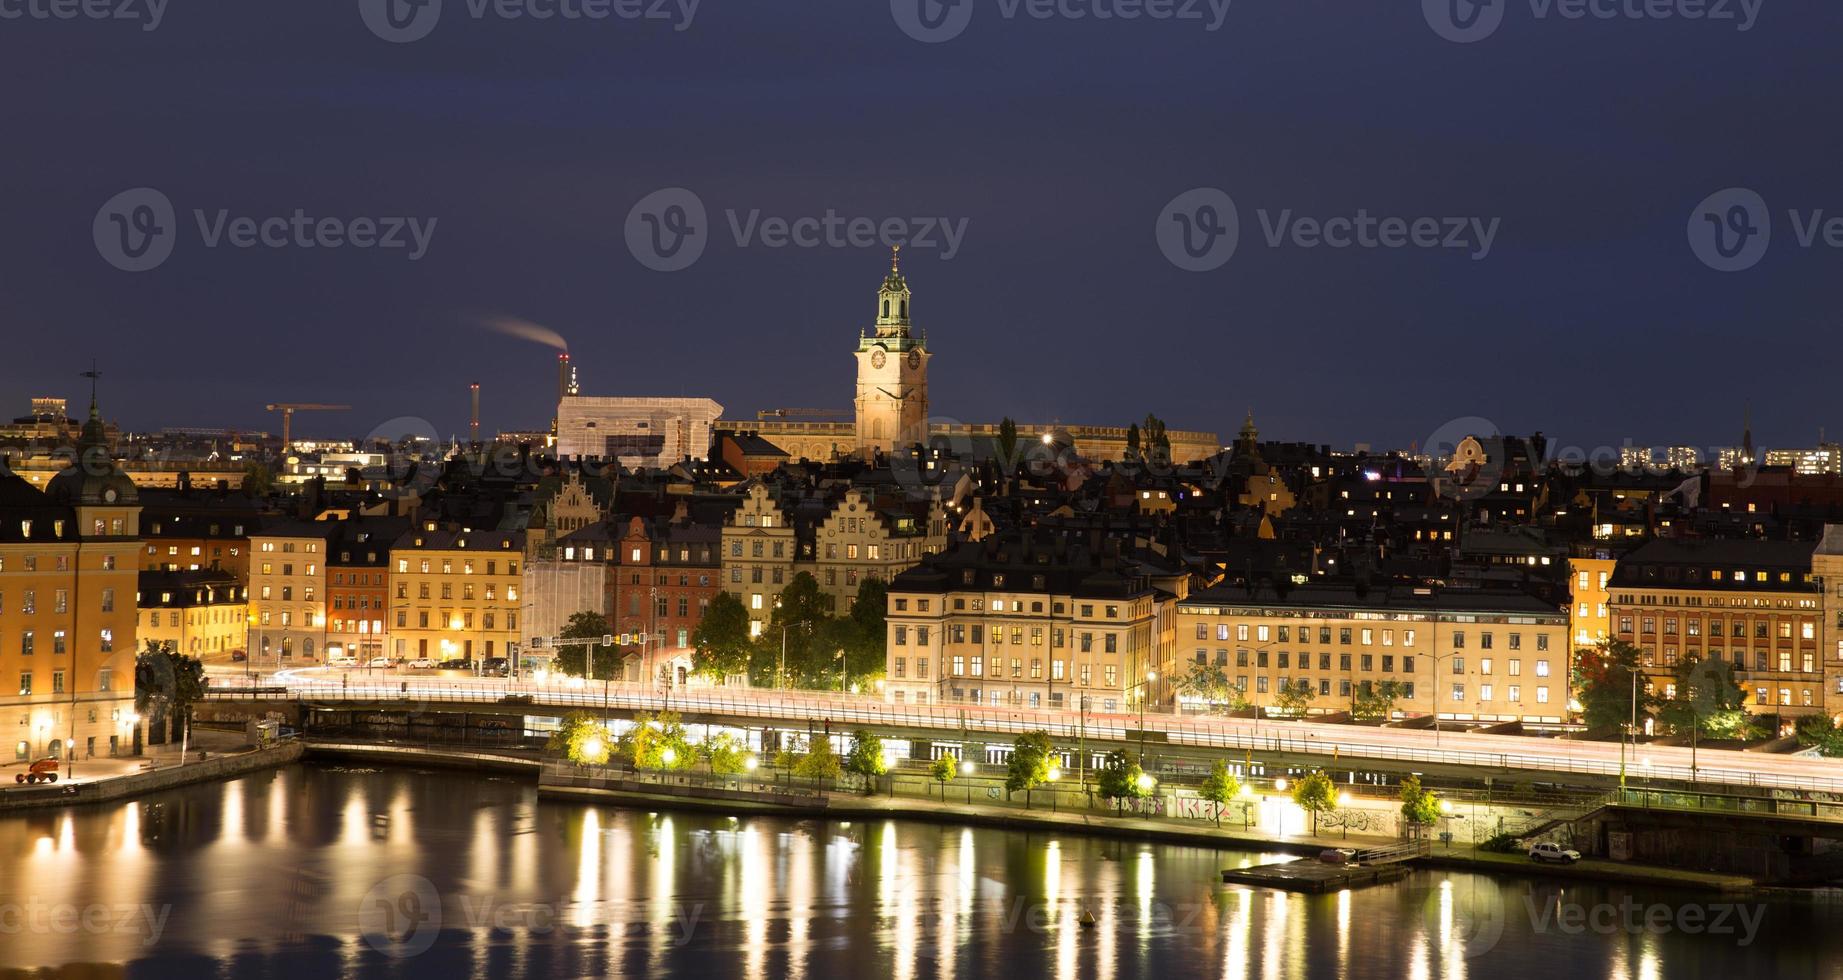 vue générale de la vieille ville de gamla stan à stockholm, suède photo